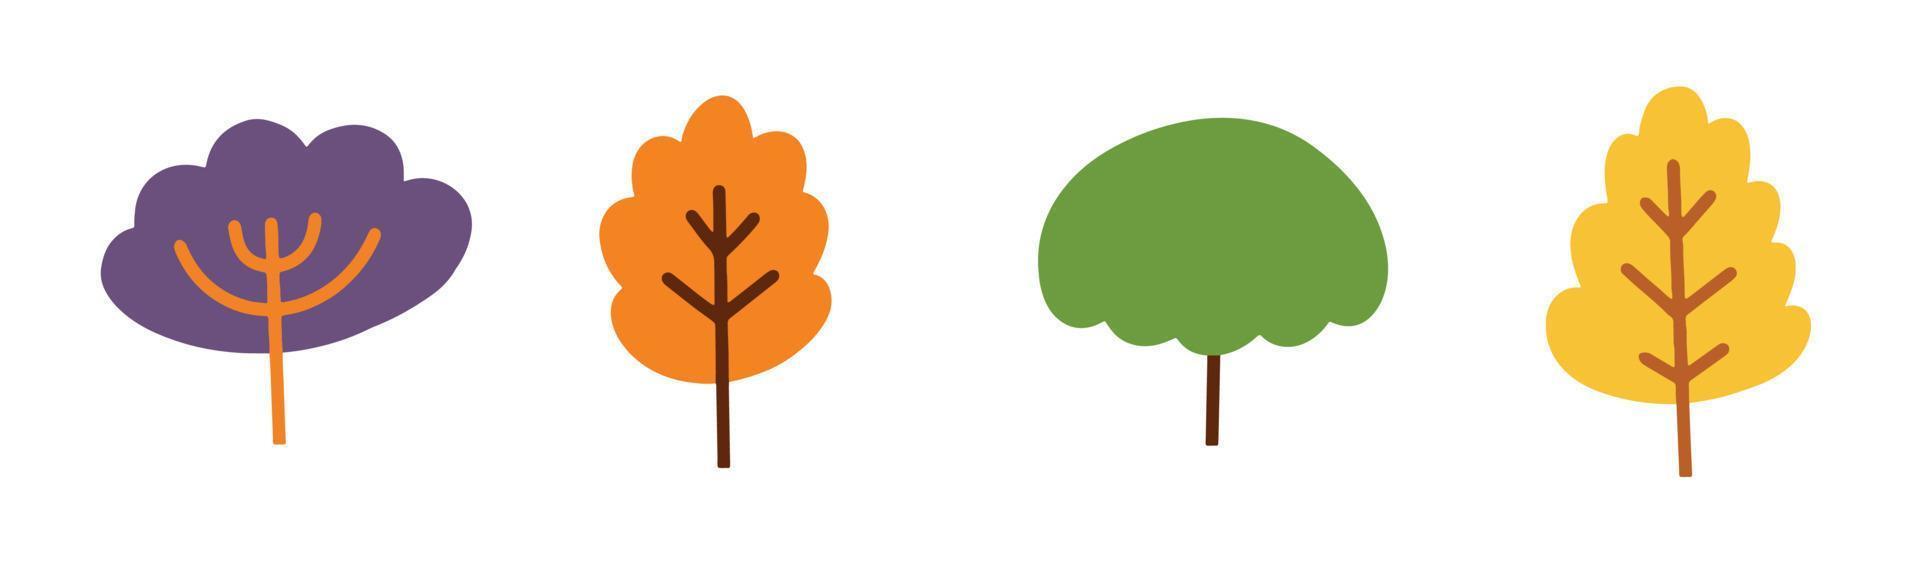 conjunto de icono de ilustración de árbol lindo en elemento de diseño plano vector